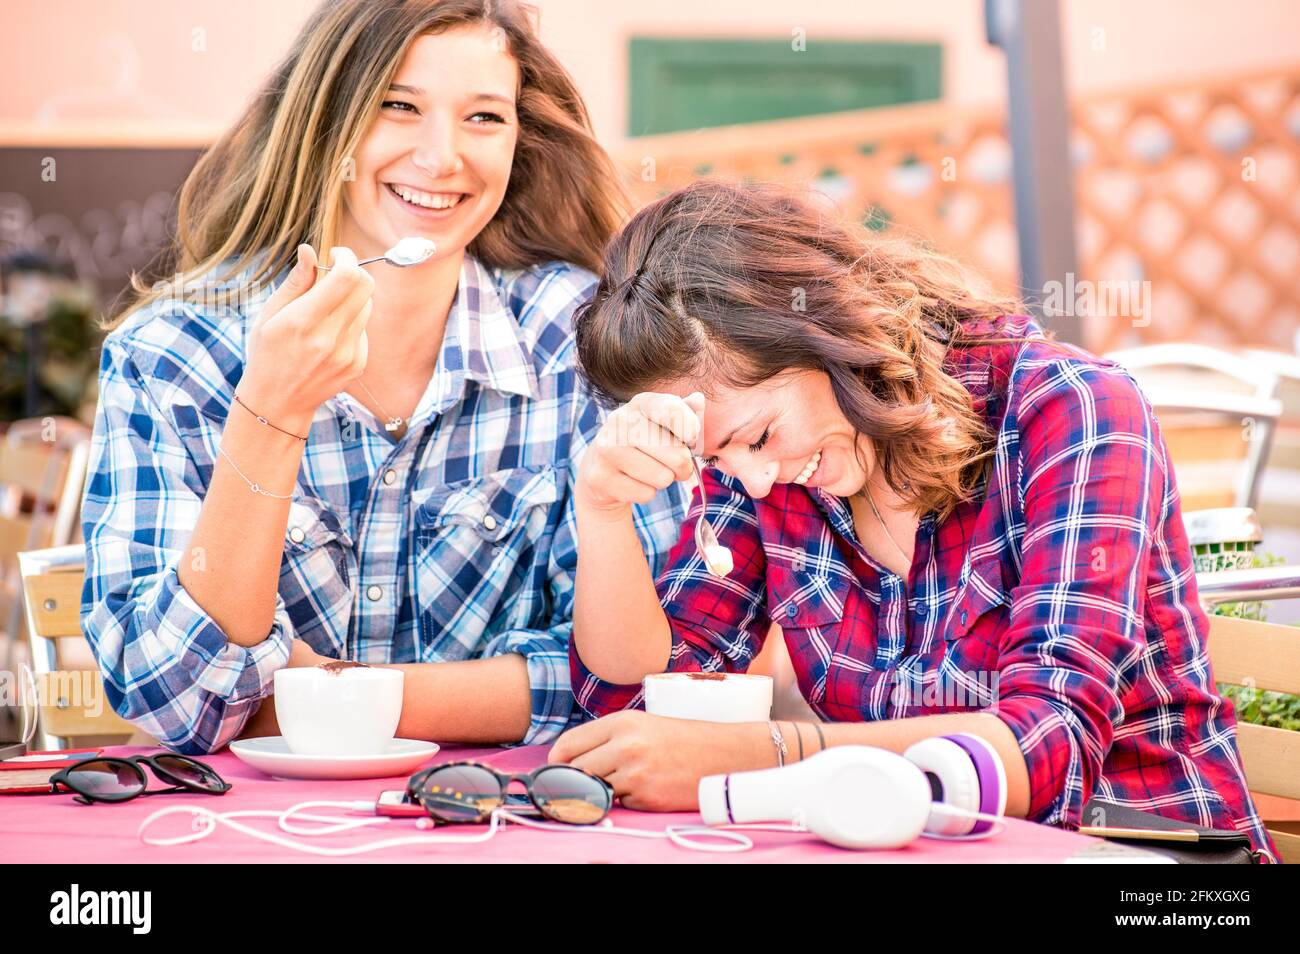 Glücklich paar Freundinnen trinken Cappuccino und lachen zusammen - Glückskonzept mit jungen Frauen reden und Spaß haben Kaffeebar - warm Stockfoto